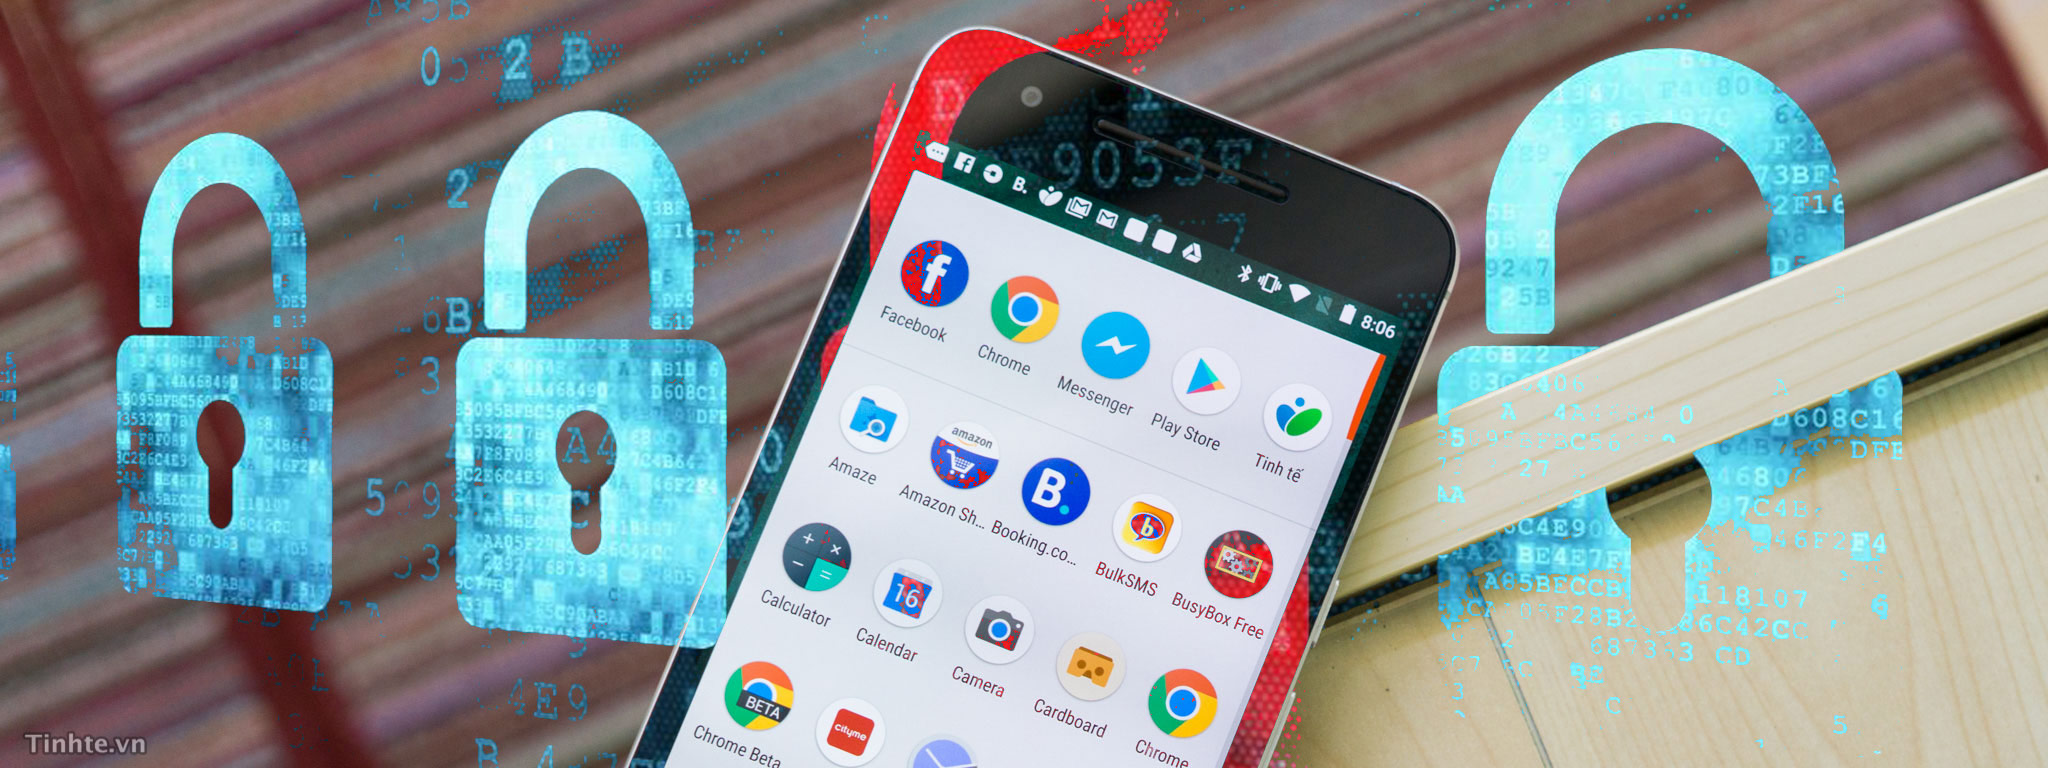 Malware Android nhiều, nhưng có thật sự đáng sợ và cần phải lo lắng không?